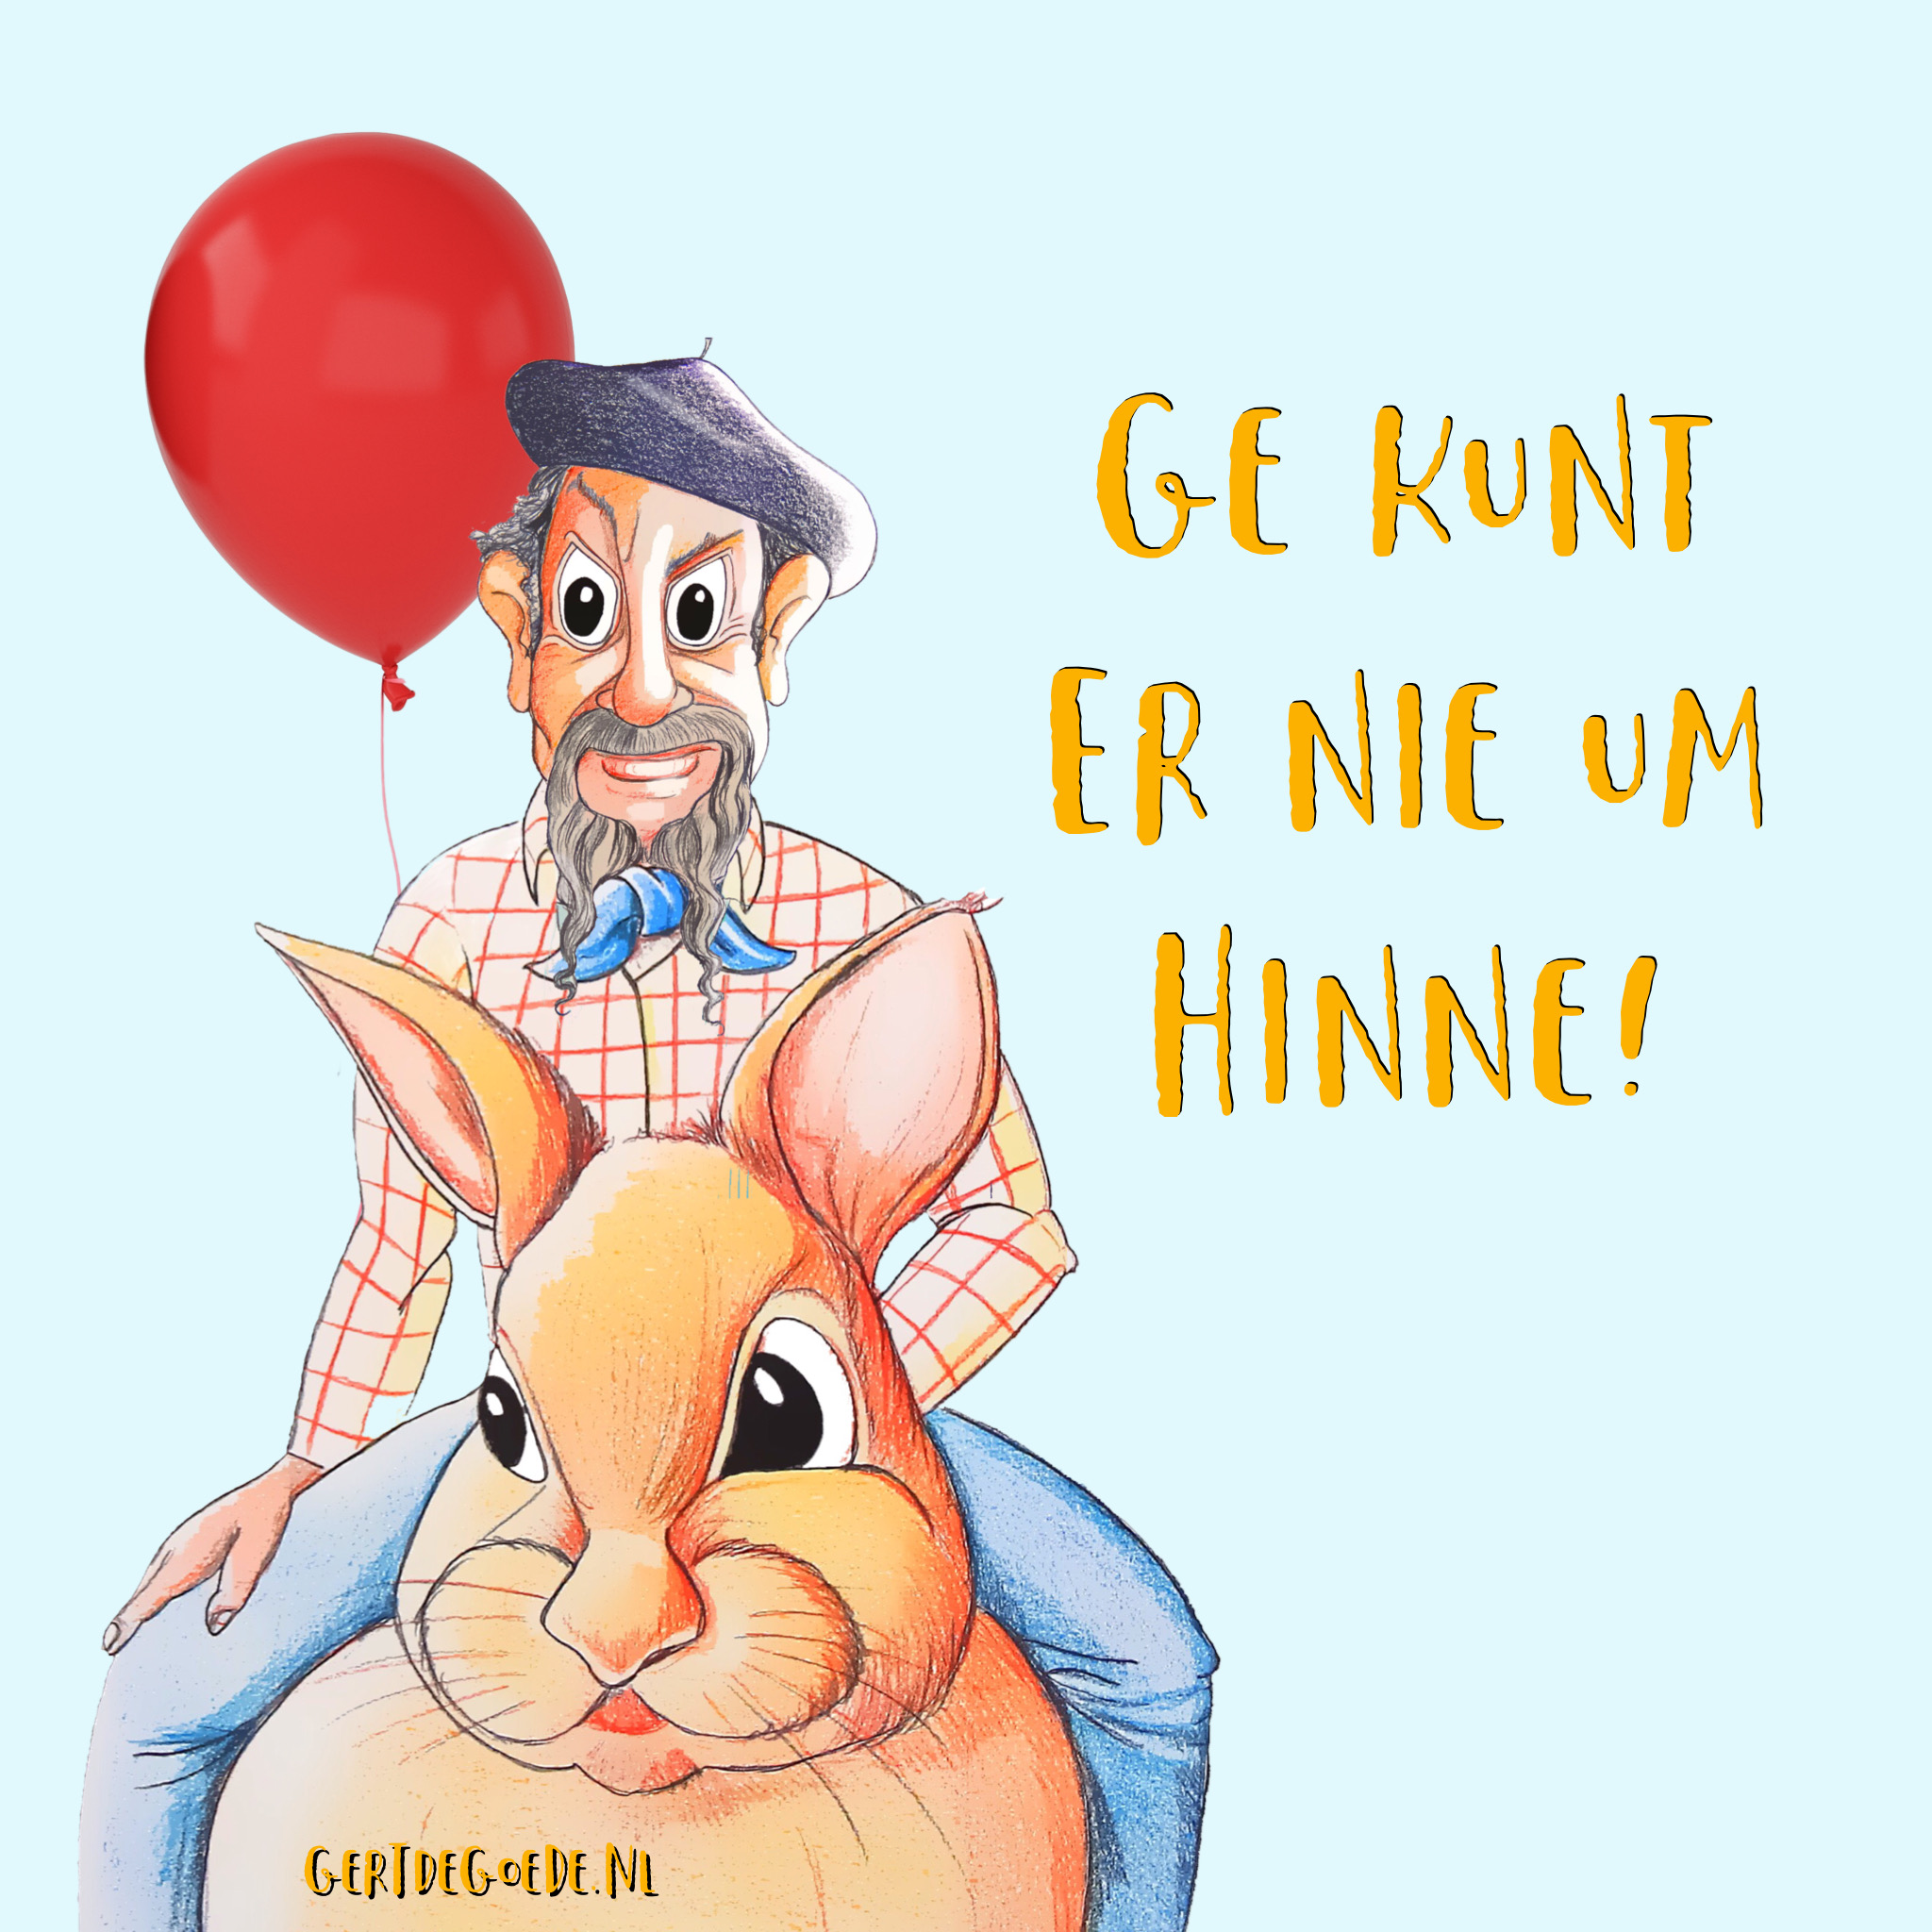 ilja Gort over de Grens konijn cowboy wijn ballon ge kunt er niet um hinne uden carnaval 2020 cartoon comic 